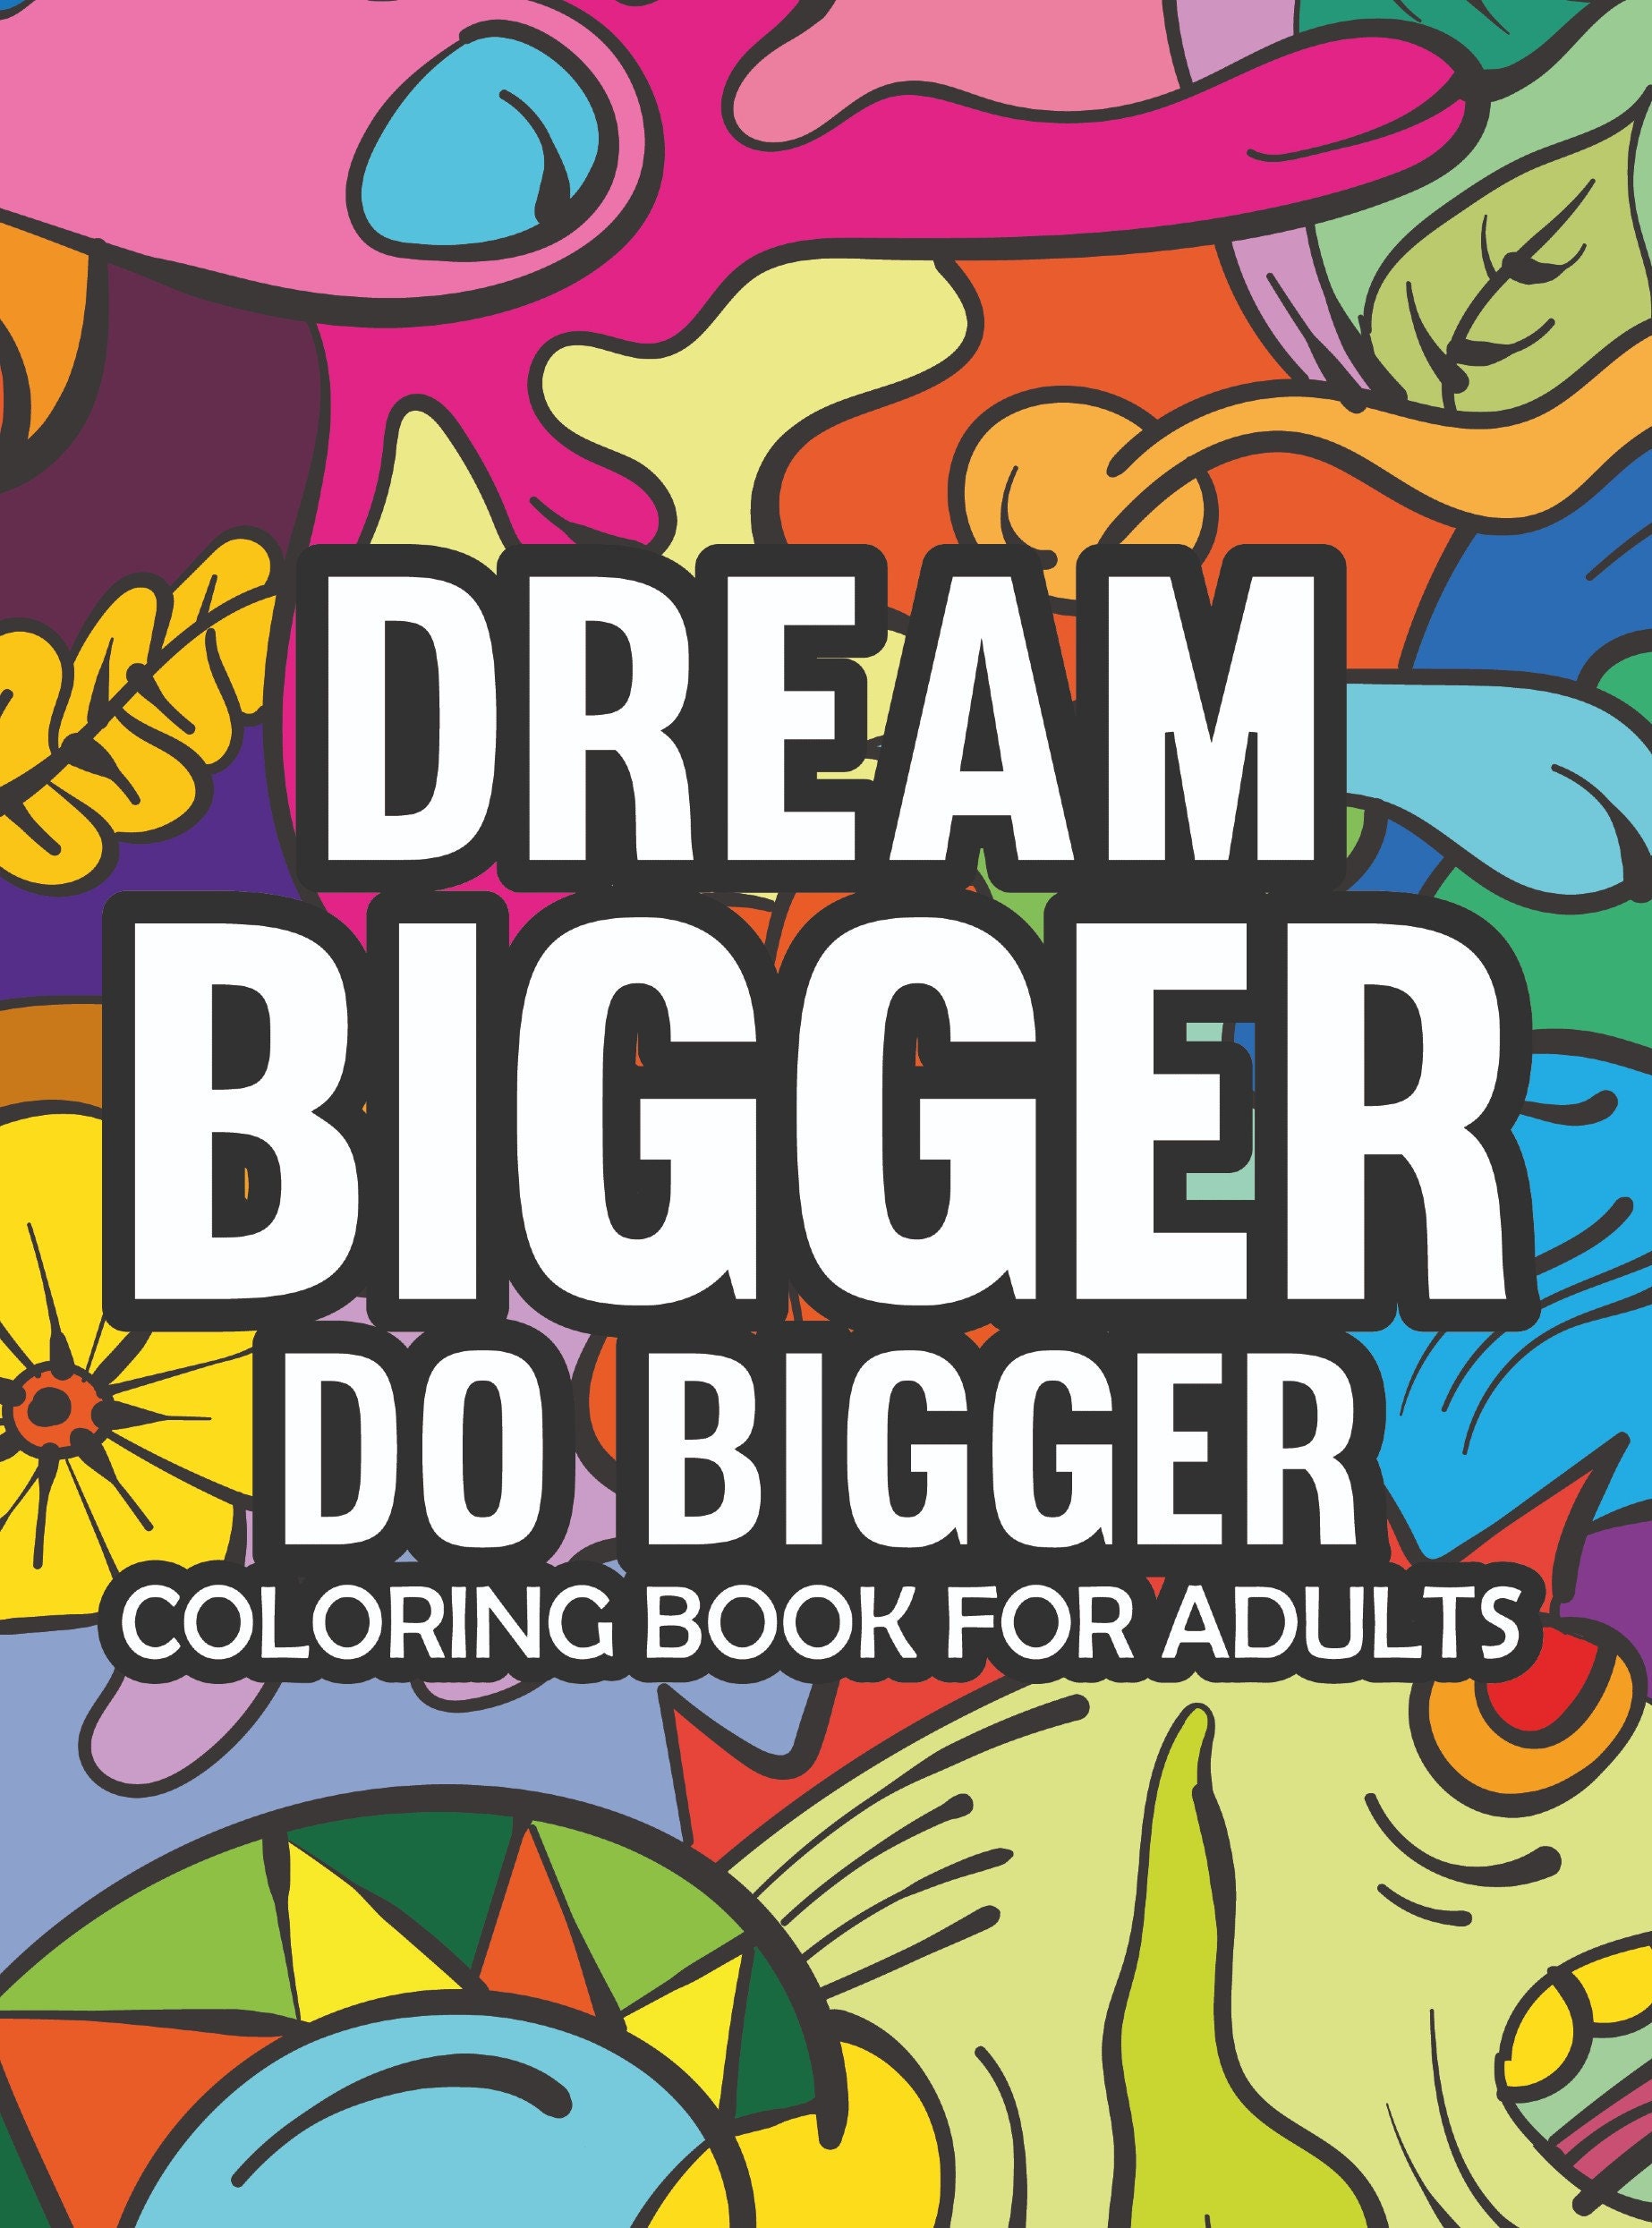 Dream Bigger: Inspiring Words Coloring Book Adults and Kids Adult Humor  Digital Download PDF 